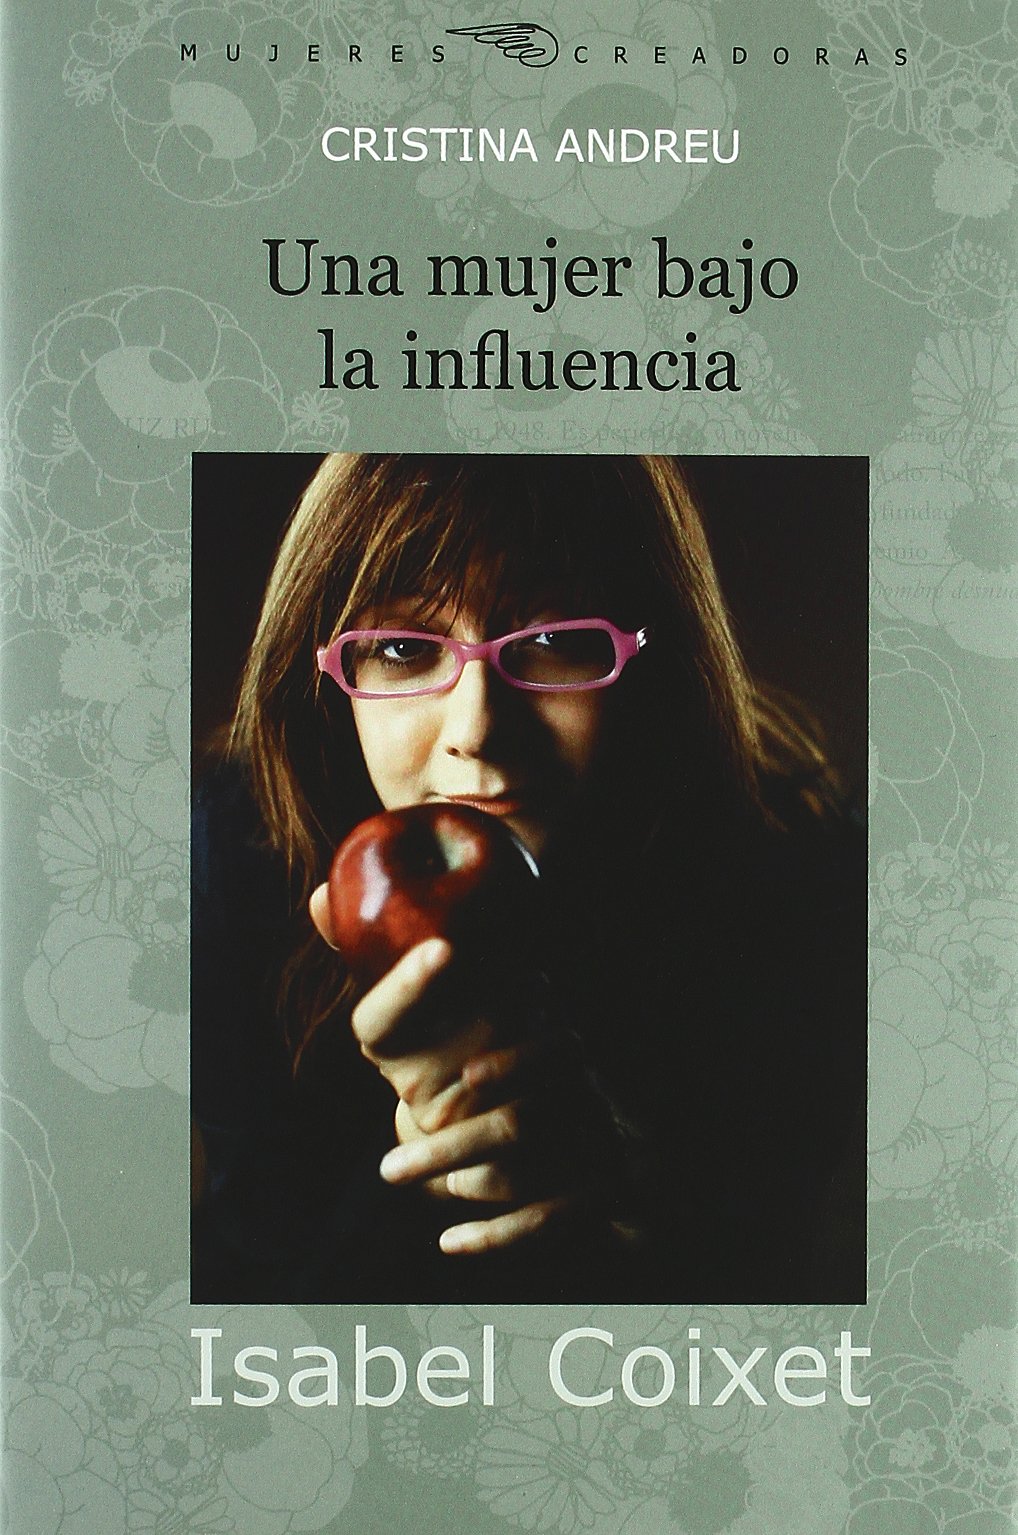 Libro: Isabel Coixet por Cristina Andreu